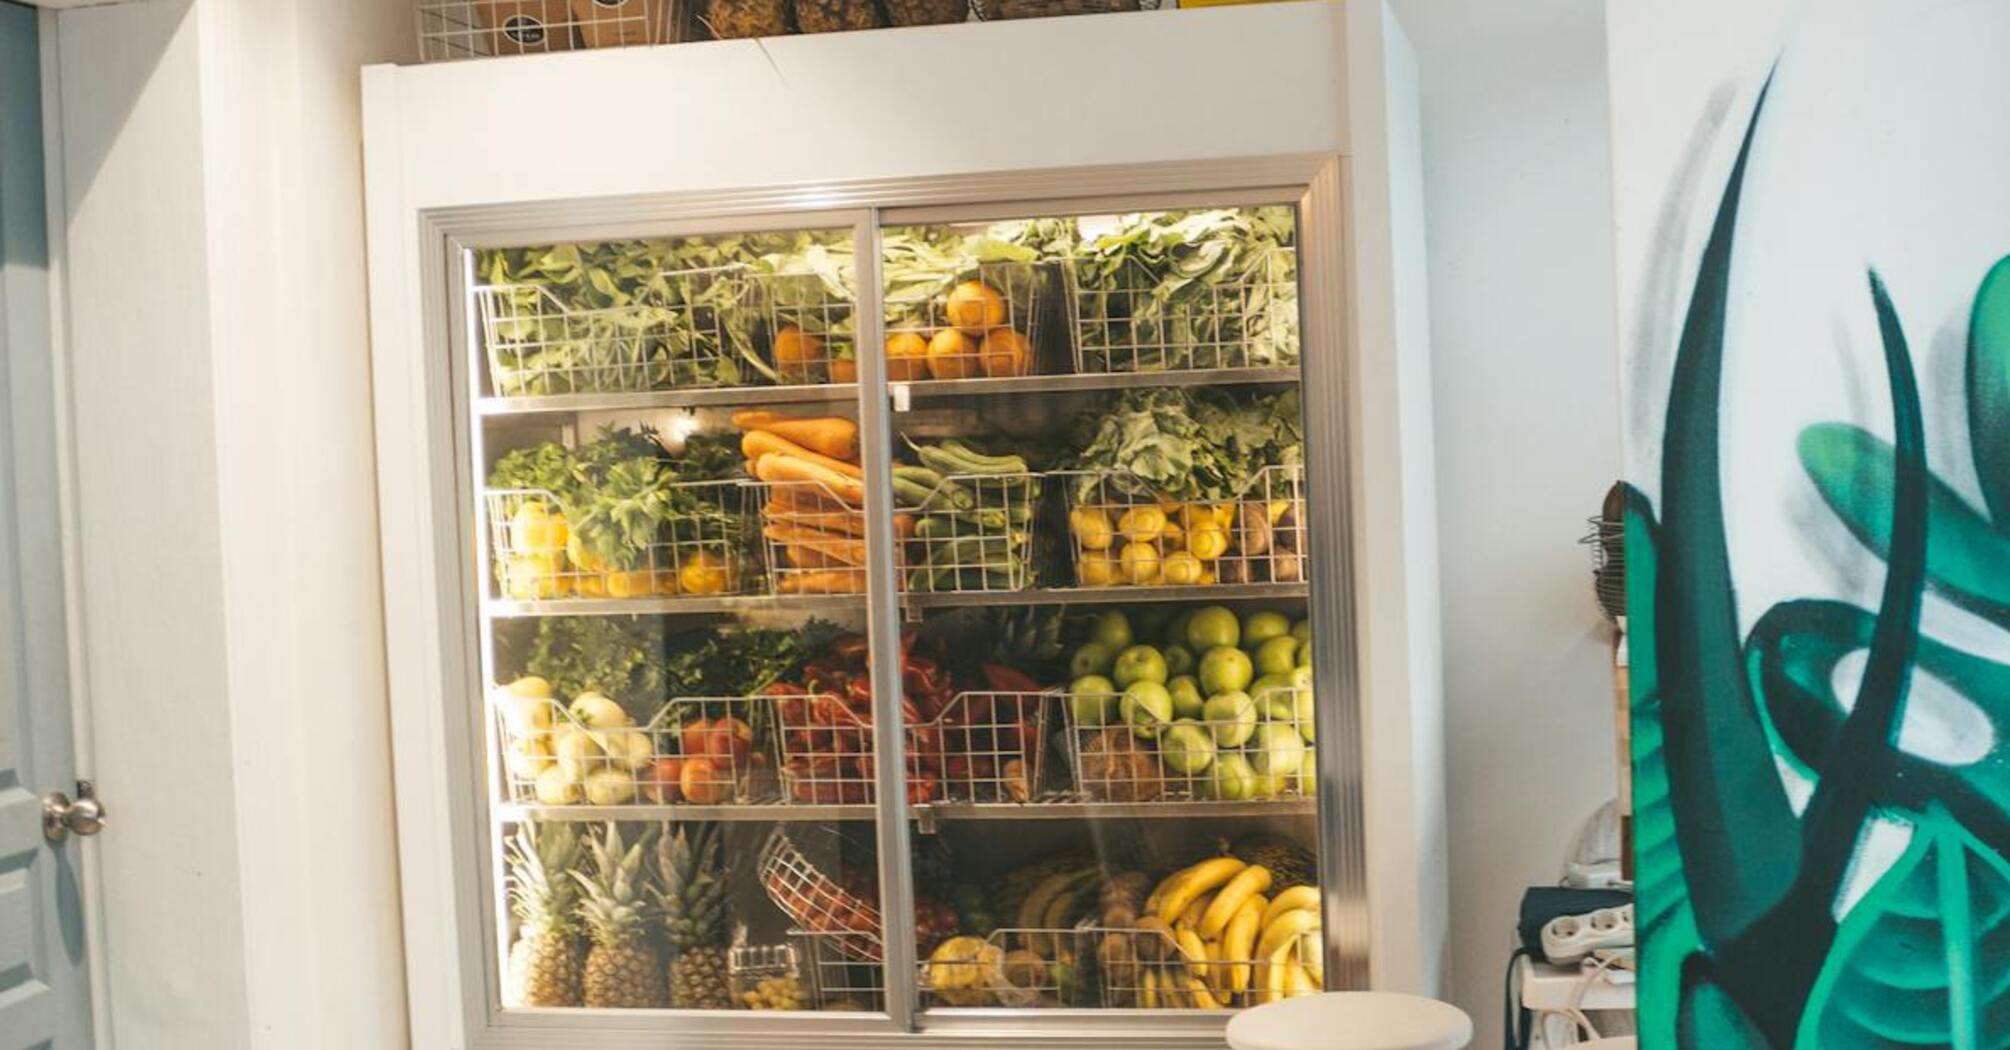 Фрукты, овощи и зелень будут дольше храниться: просто положите эту вещь в холодильник